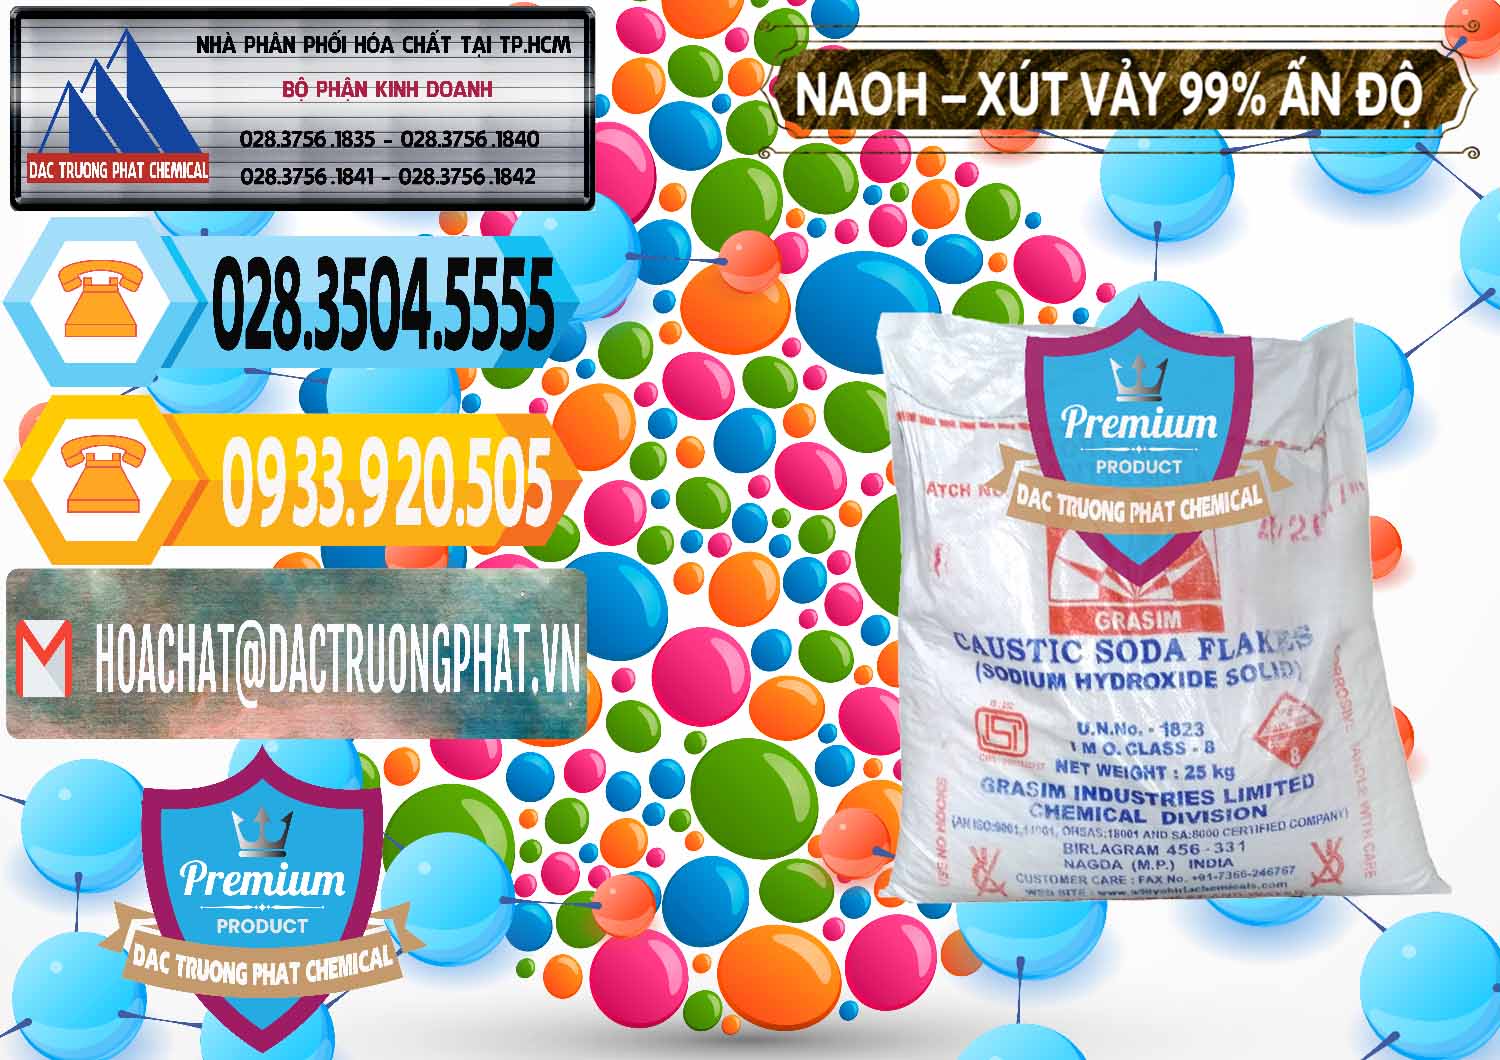 Đơn vị cung ứng & bán Xút Vảy - NaOH Vảy 99% Aditya Birla Grasim Ấn Độ India - 0171 - Cty chuyên bán - phân phối hóa chất tại TP.HCM - hoachattayrua.net